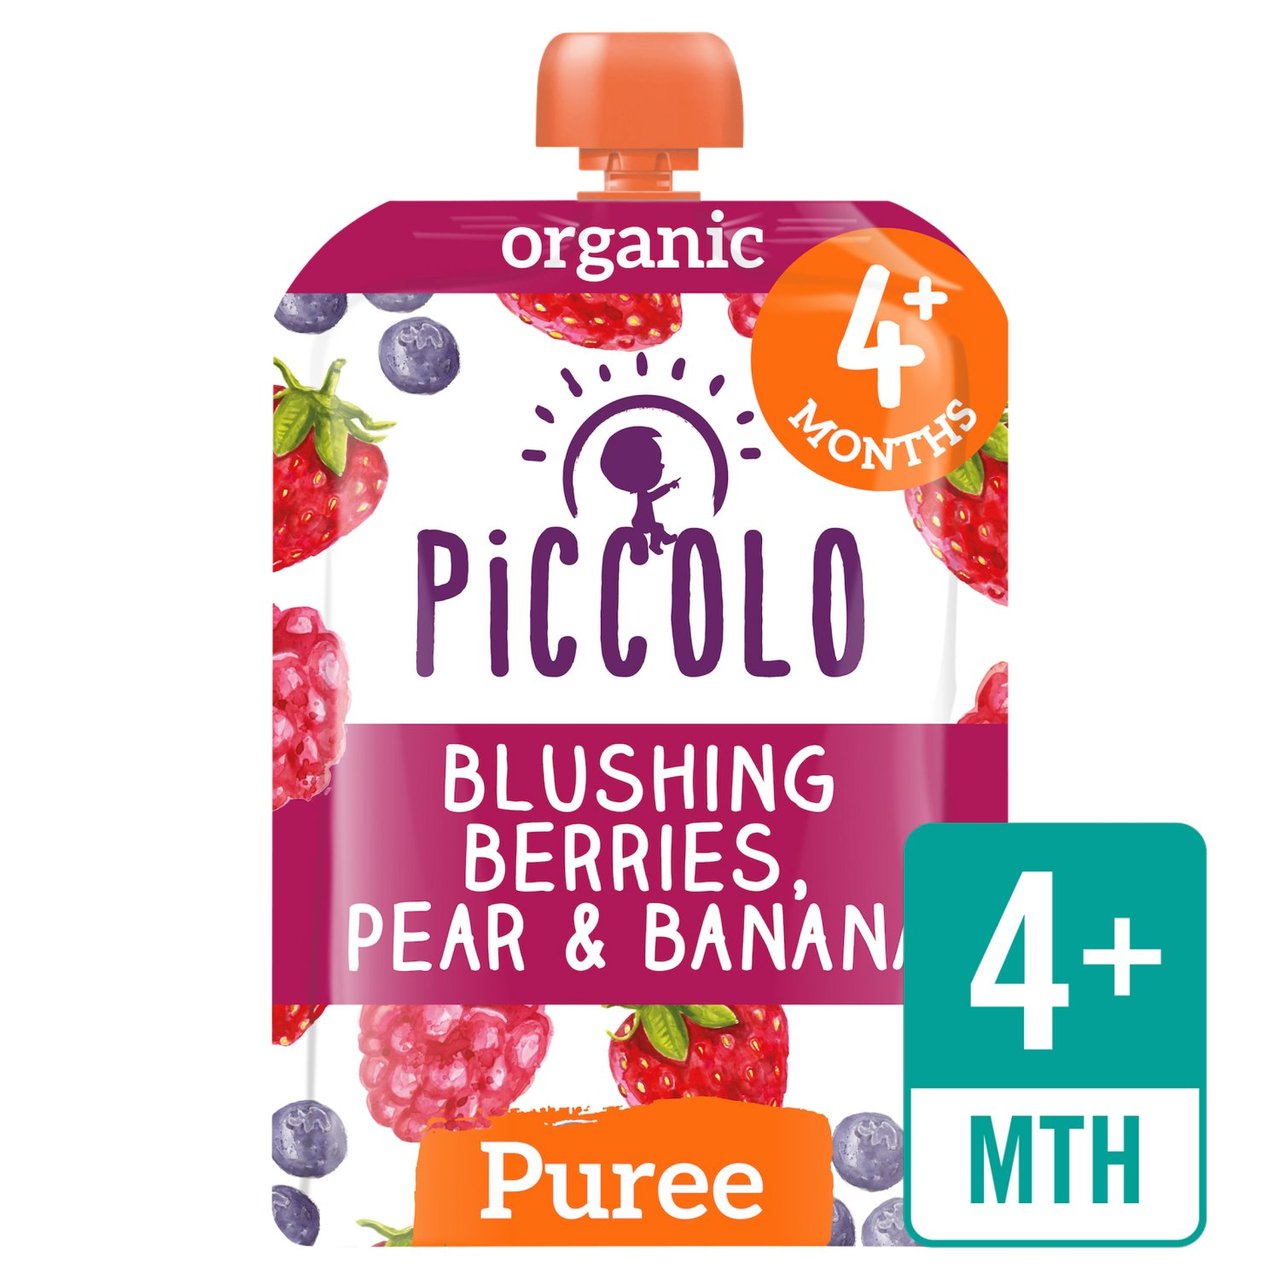 Piccolo Blushing Berries, Pear & Banana Organic Pouch, 4 mths+ 100g